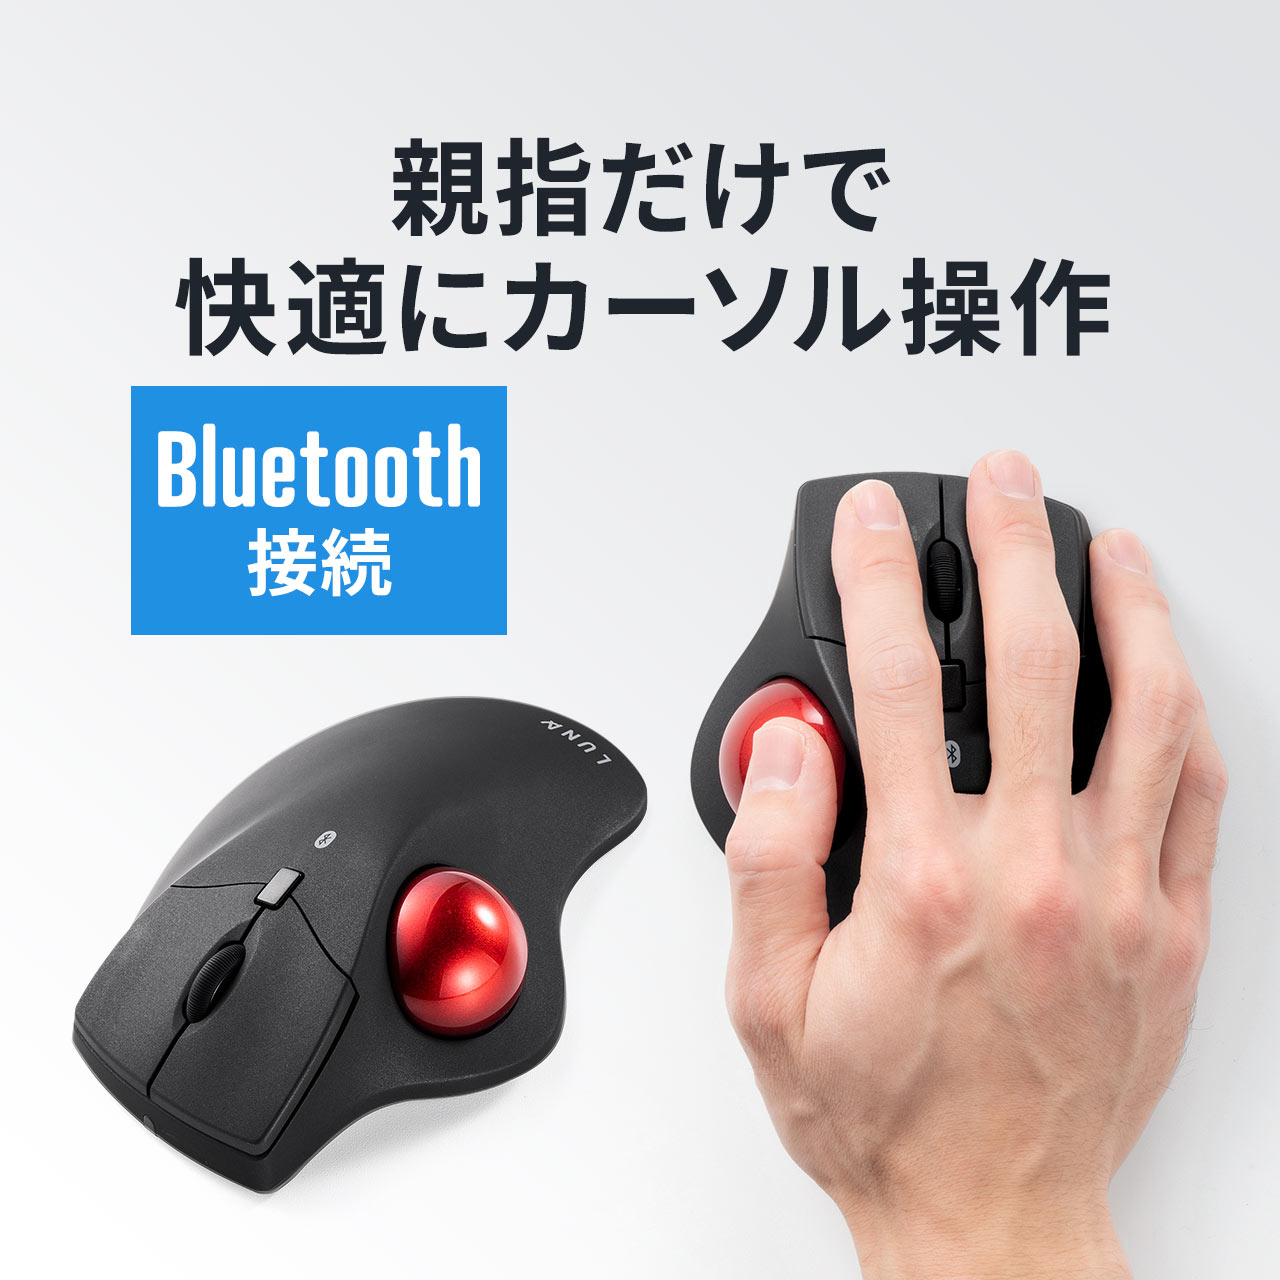 トラックボールマウス Bluetooth エルゴノミクス 親指操作 3ボタン